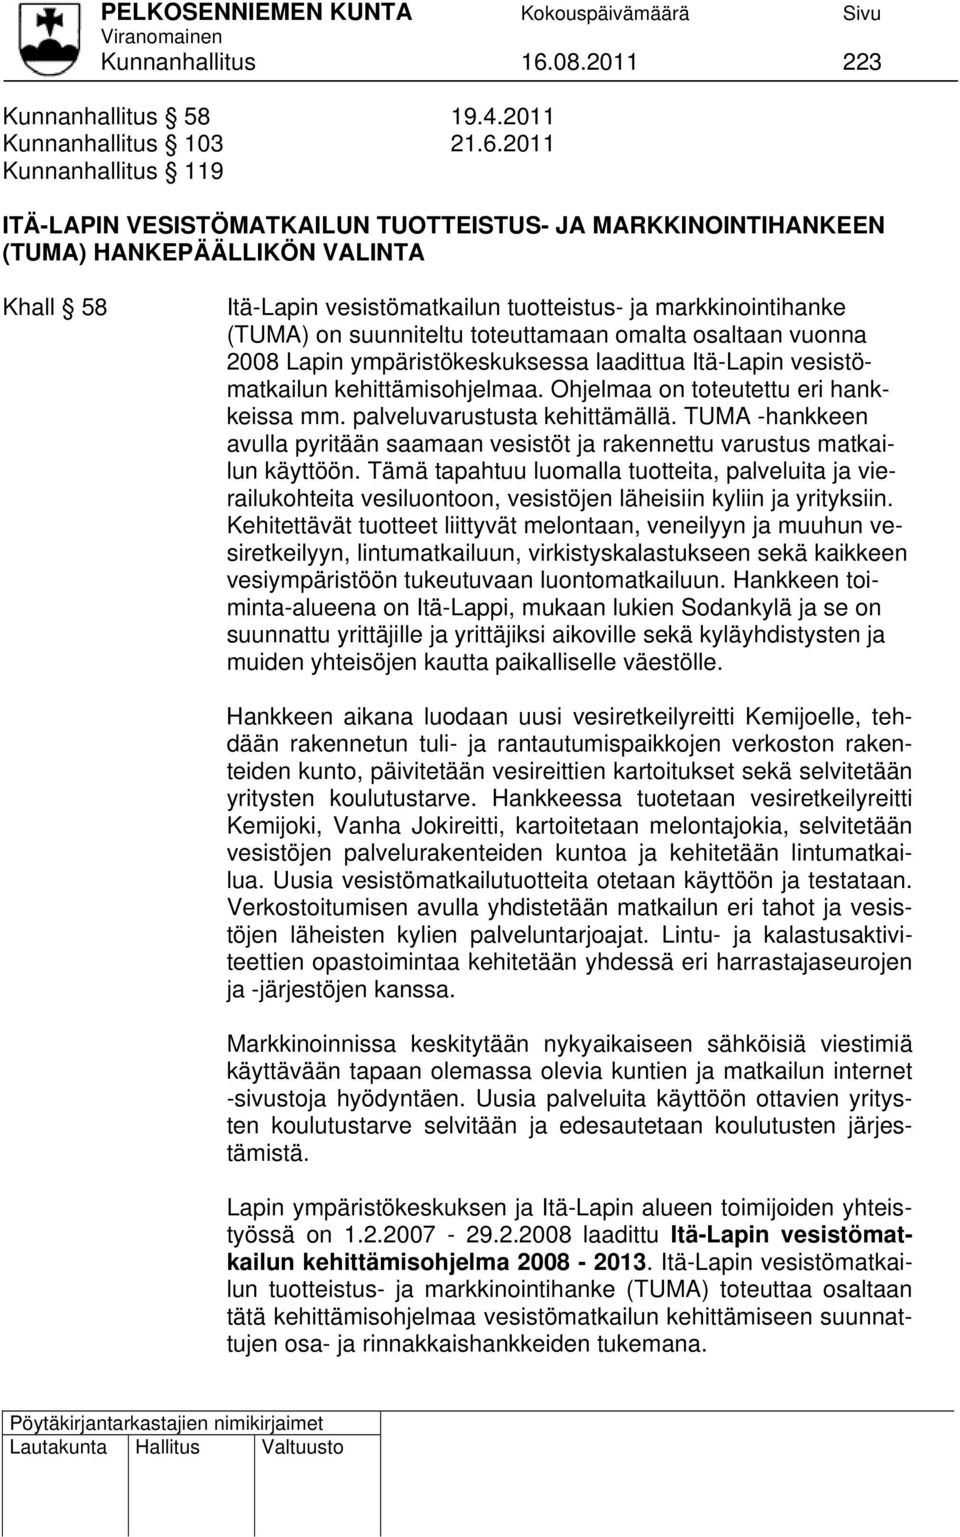 2011 Kunnanhallitus 119 ITÄ-LAPIN VESISTÖMATKAILUN TUOTTEISTUS- JA MARKKINOINTIHANKEEN (TUMA) HANKEPÄÄLLIKÖN VALINTA Khall 58 Itä-Lapin vesistömatkailun tuotteistus- ja markkinointihanke (TUMA) on